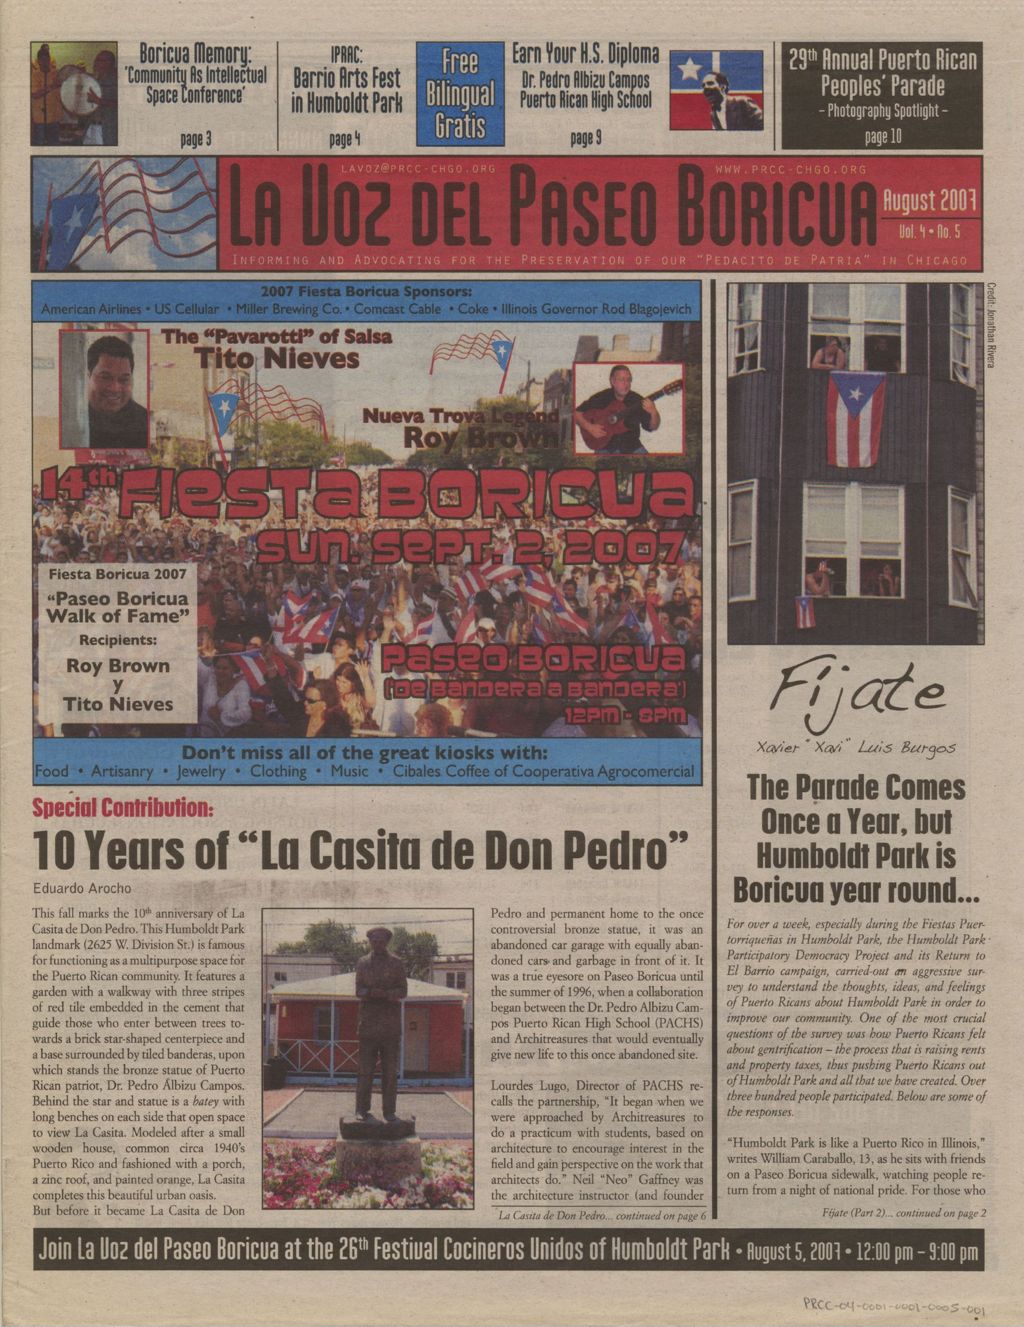 Miniature of La Voz del Paseo Boricua; August 2007; vol. 4, no. 5 (Spanish and English covers)